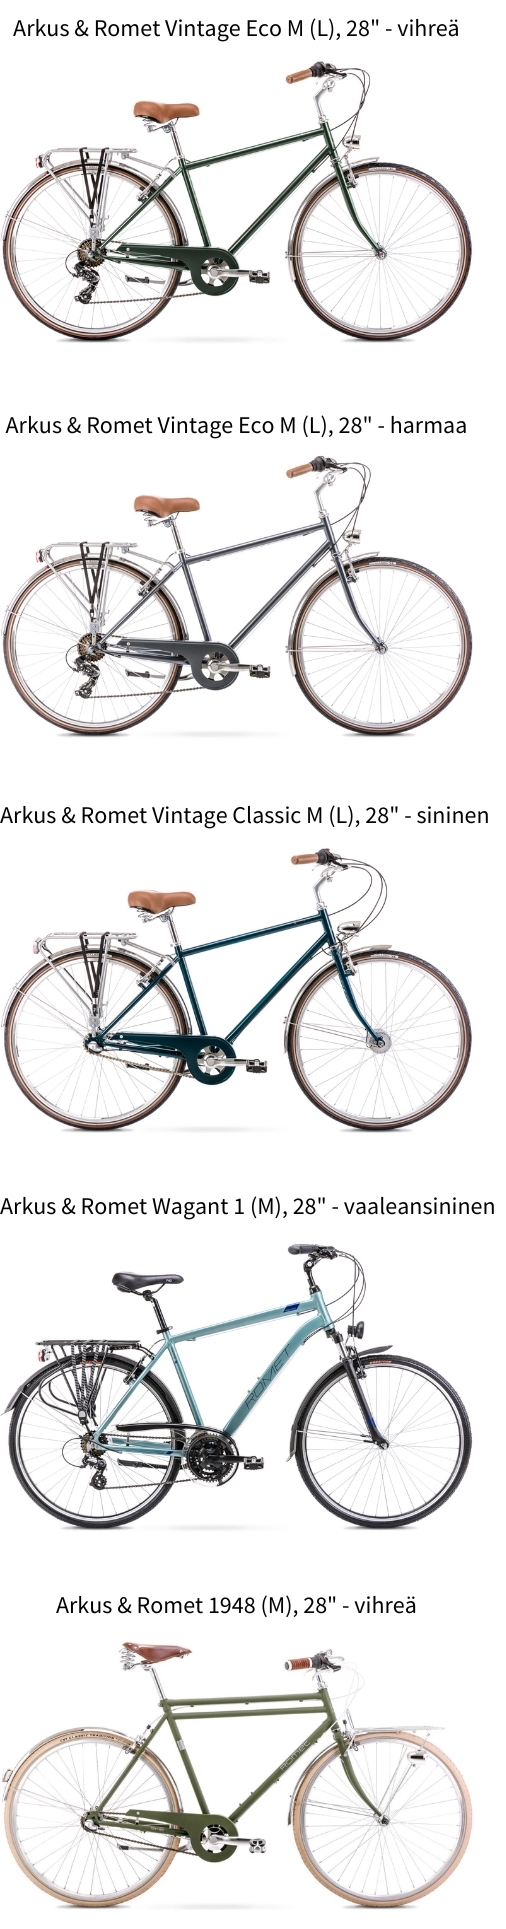 Arkus & Romet miesten polkupyörä | Tarjous jopa -28 %